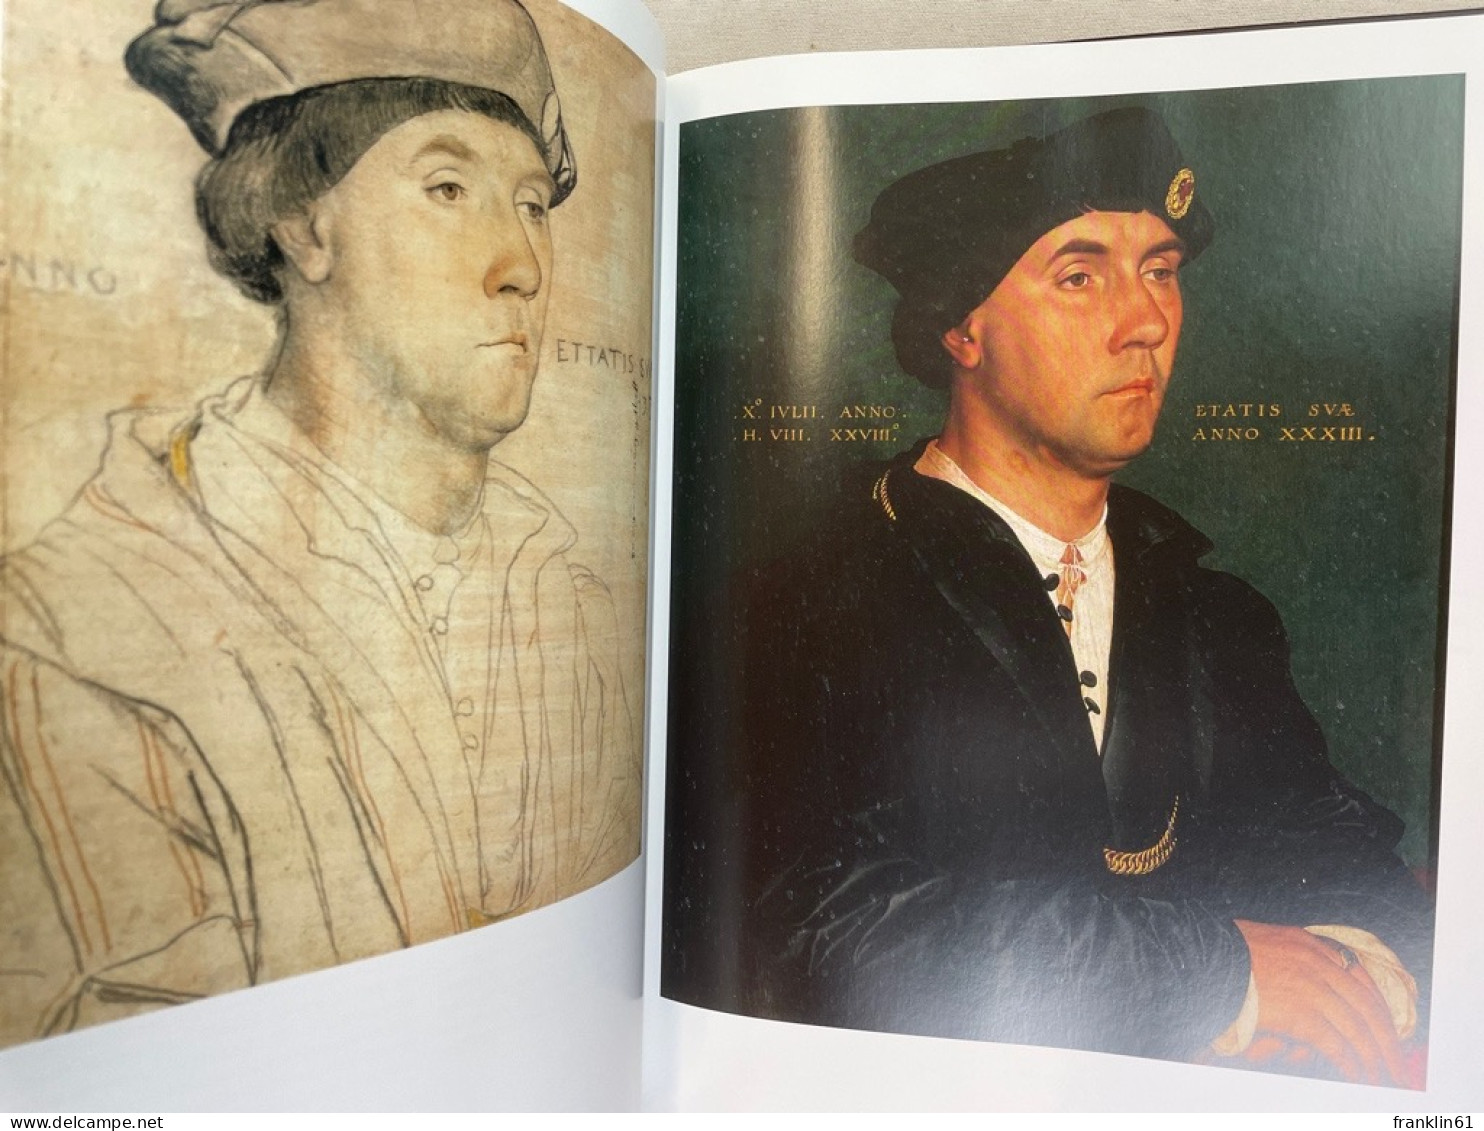 Hans Holbein der Jüngere : 1497/98 - 1543 ;